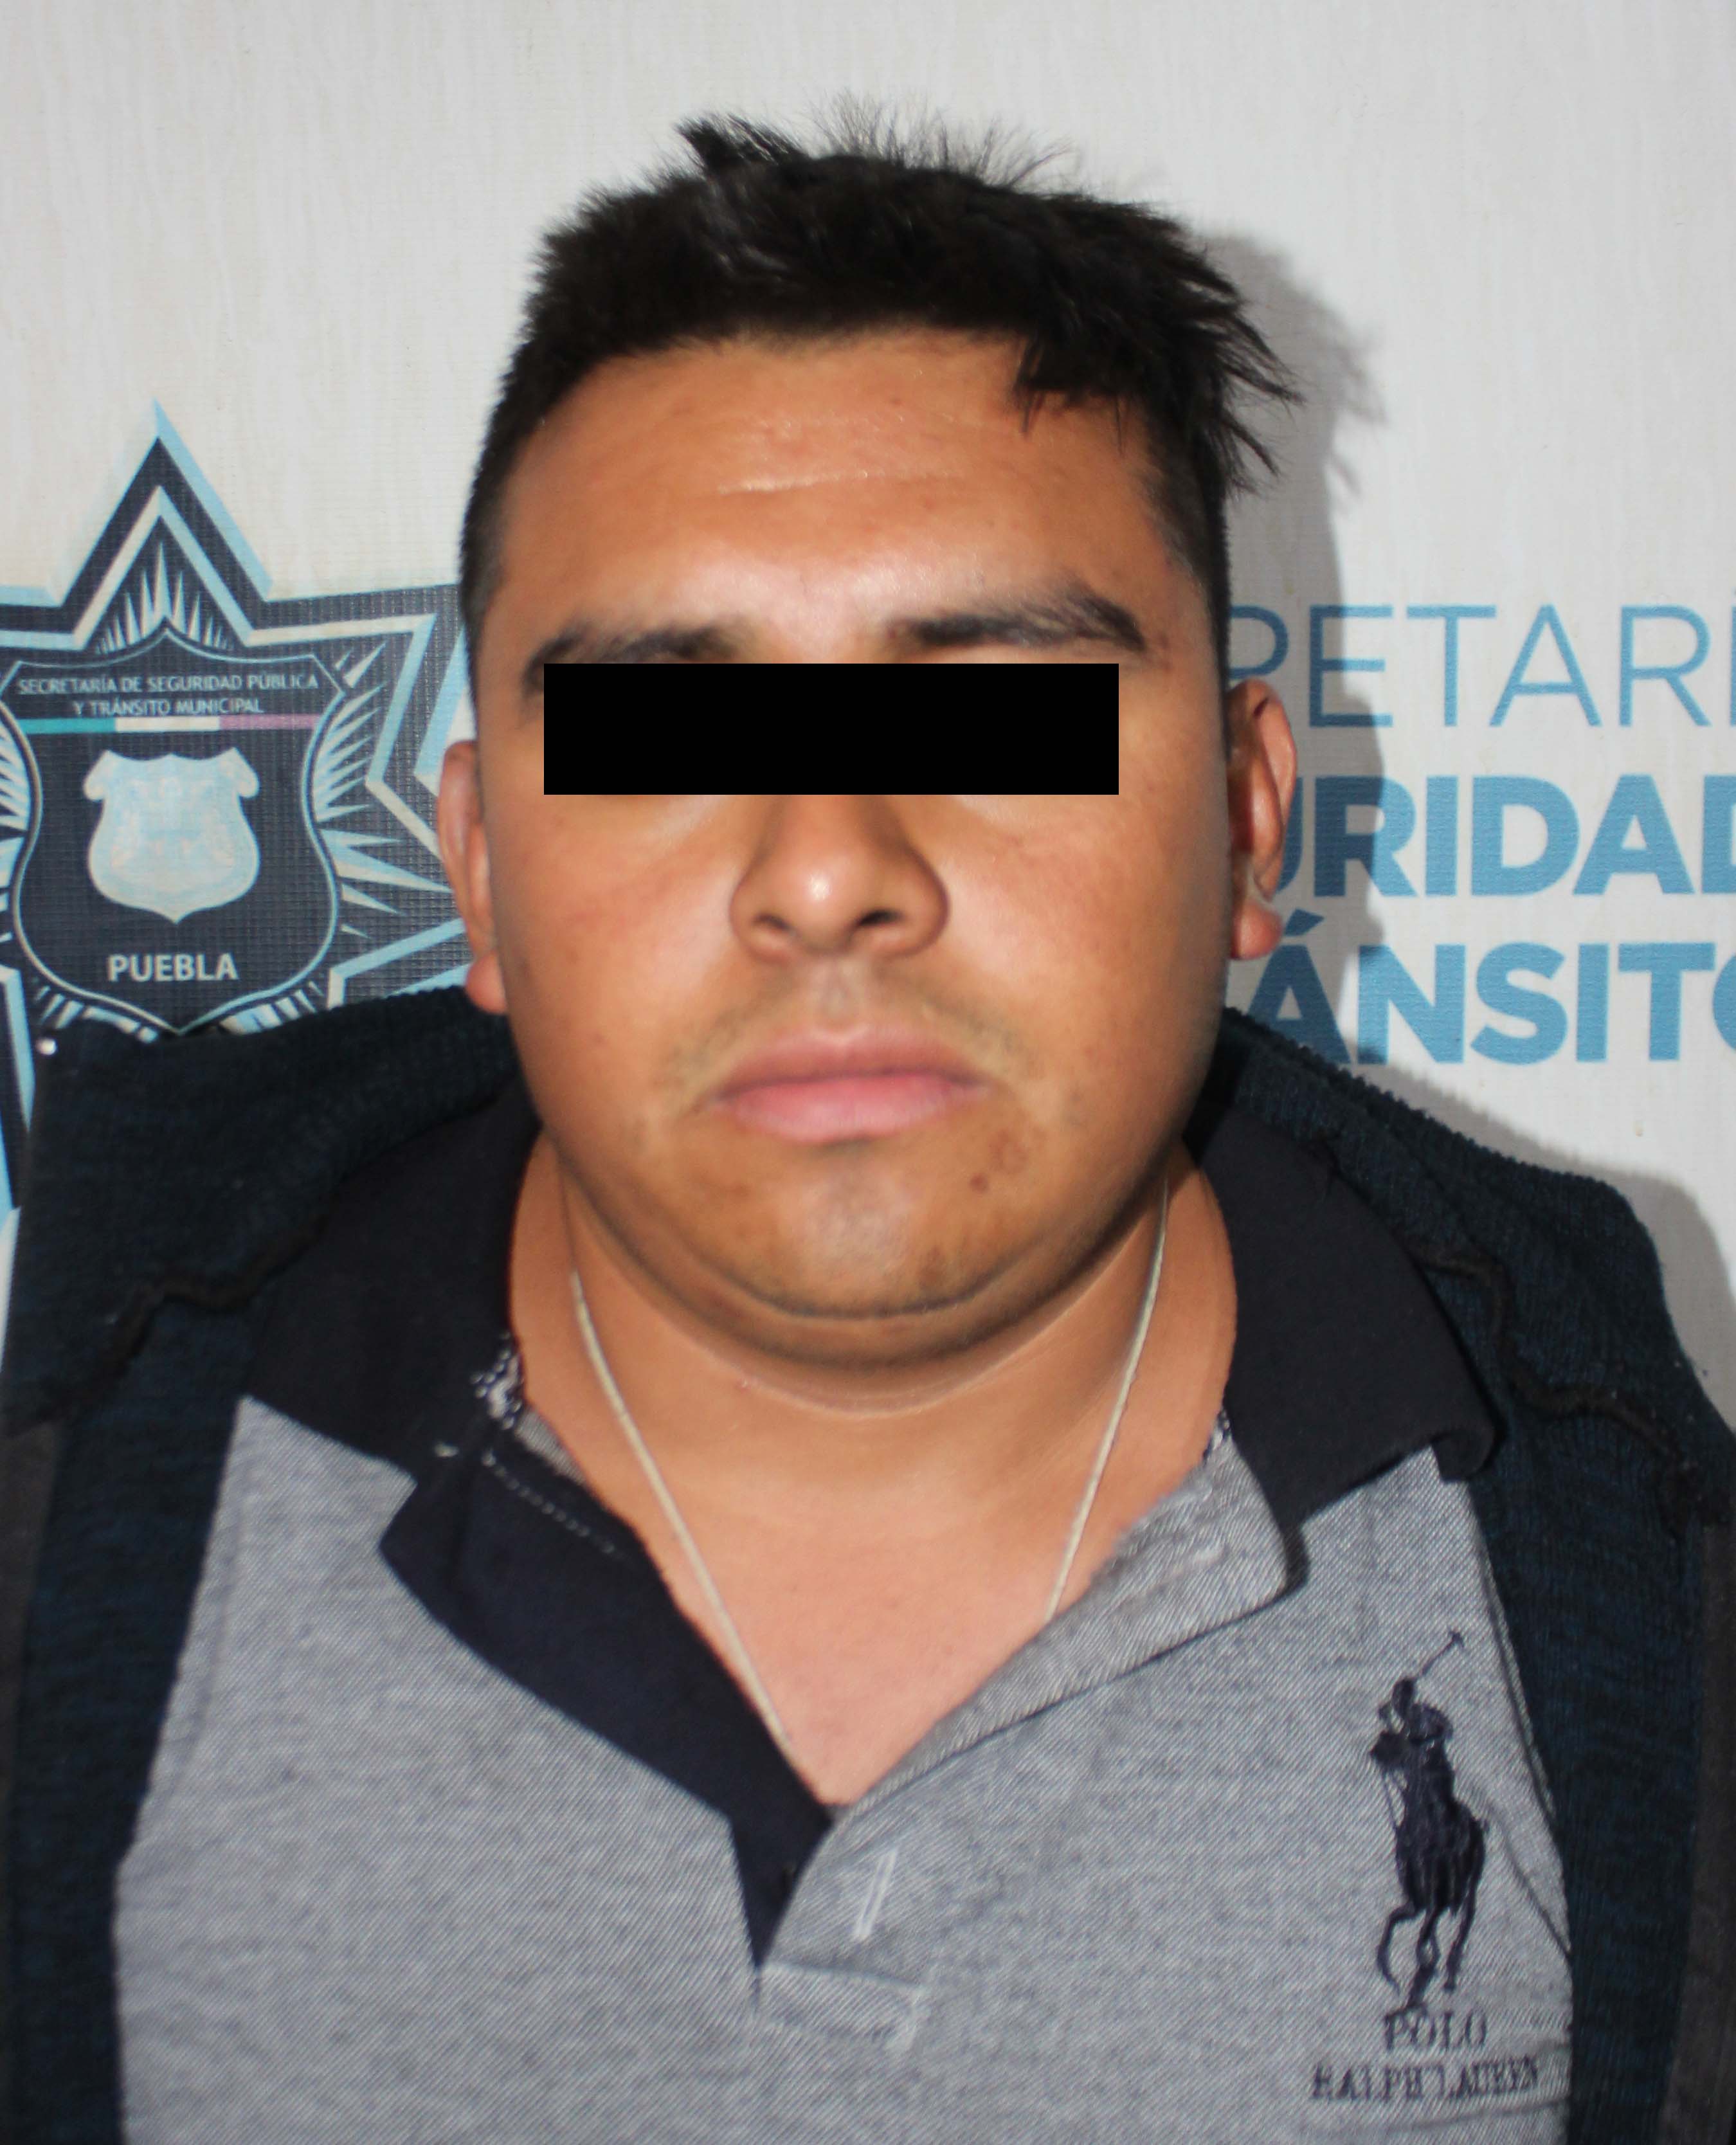 Aseguró SSC de Puebla alrededor de 1.5 kilogramos de posible marihuana; tres detenidos